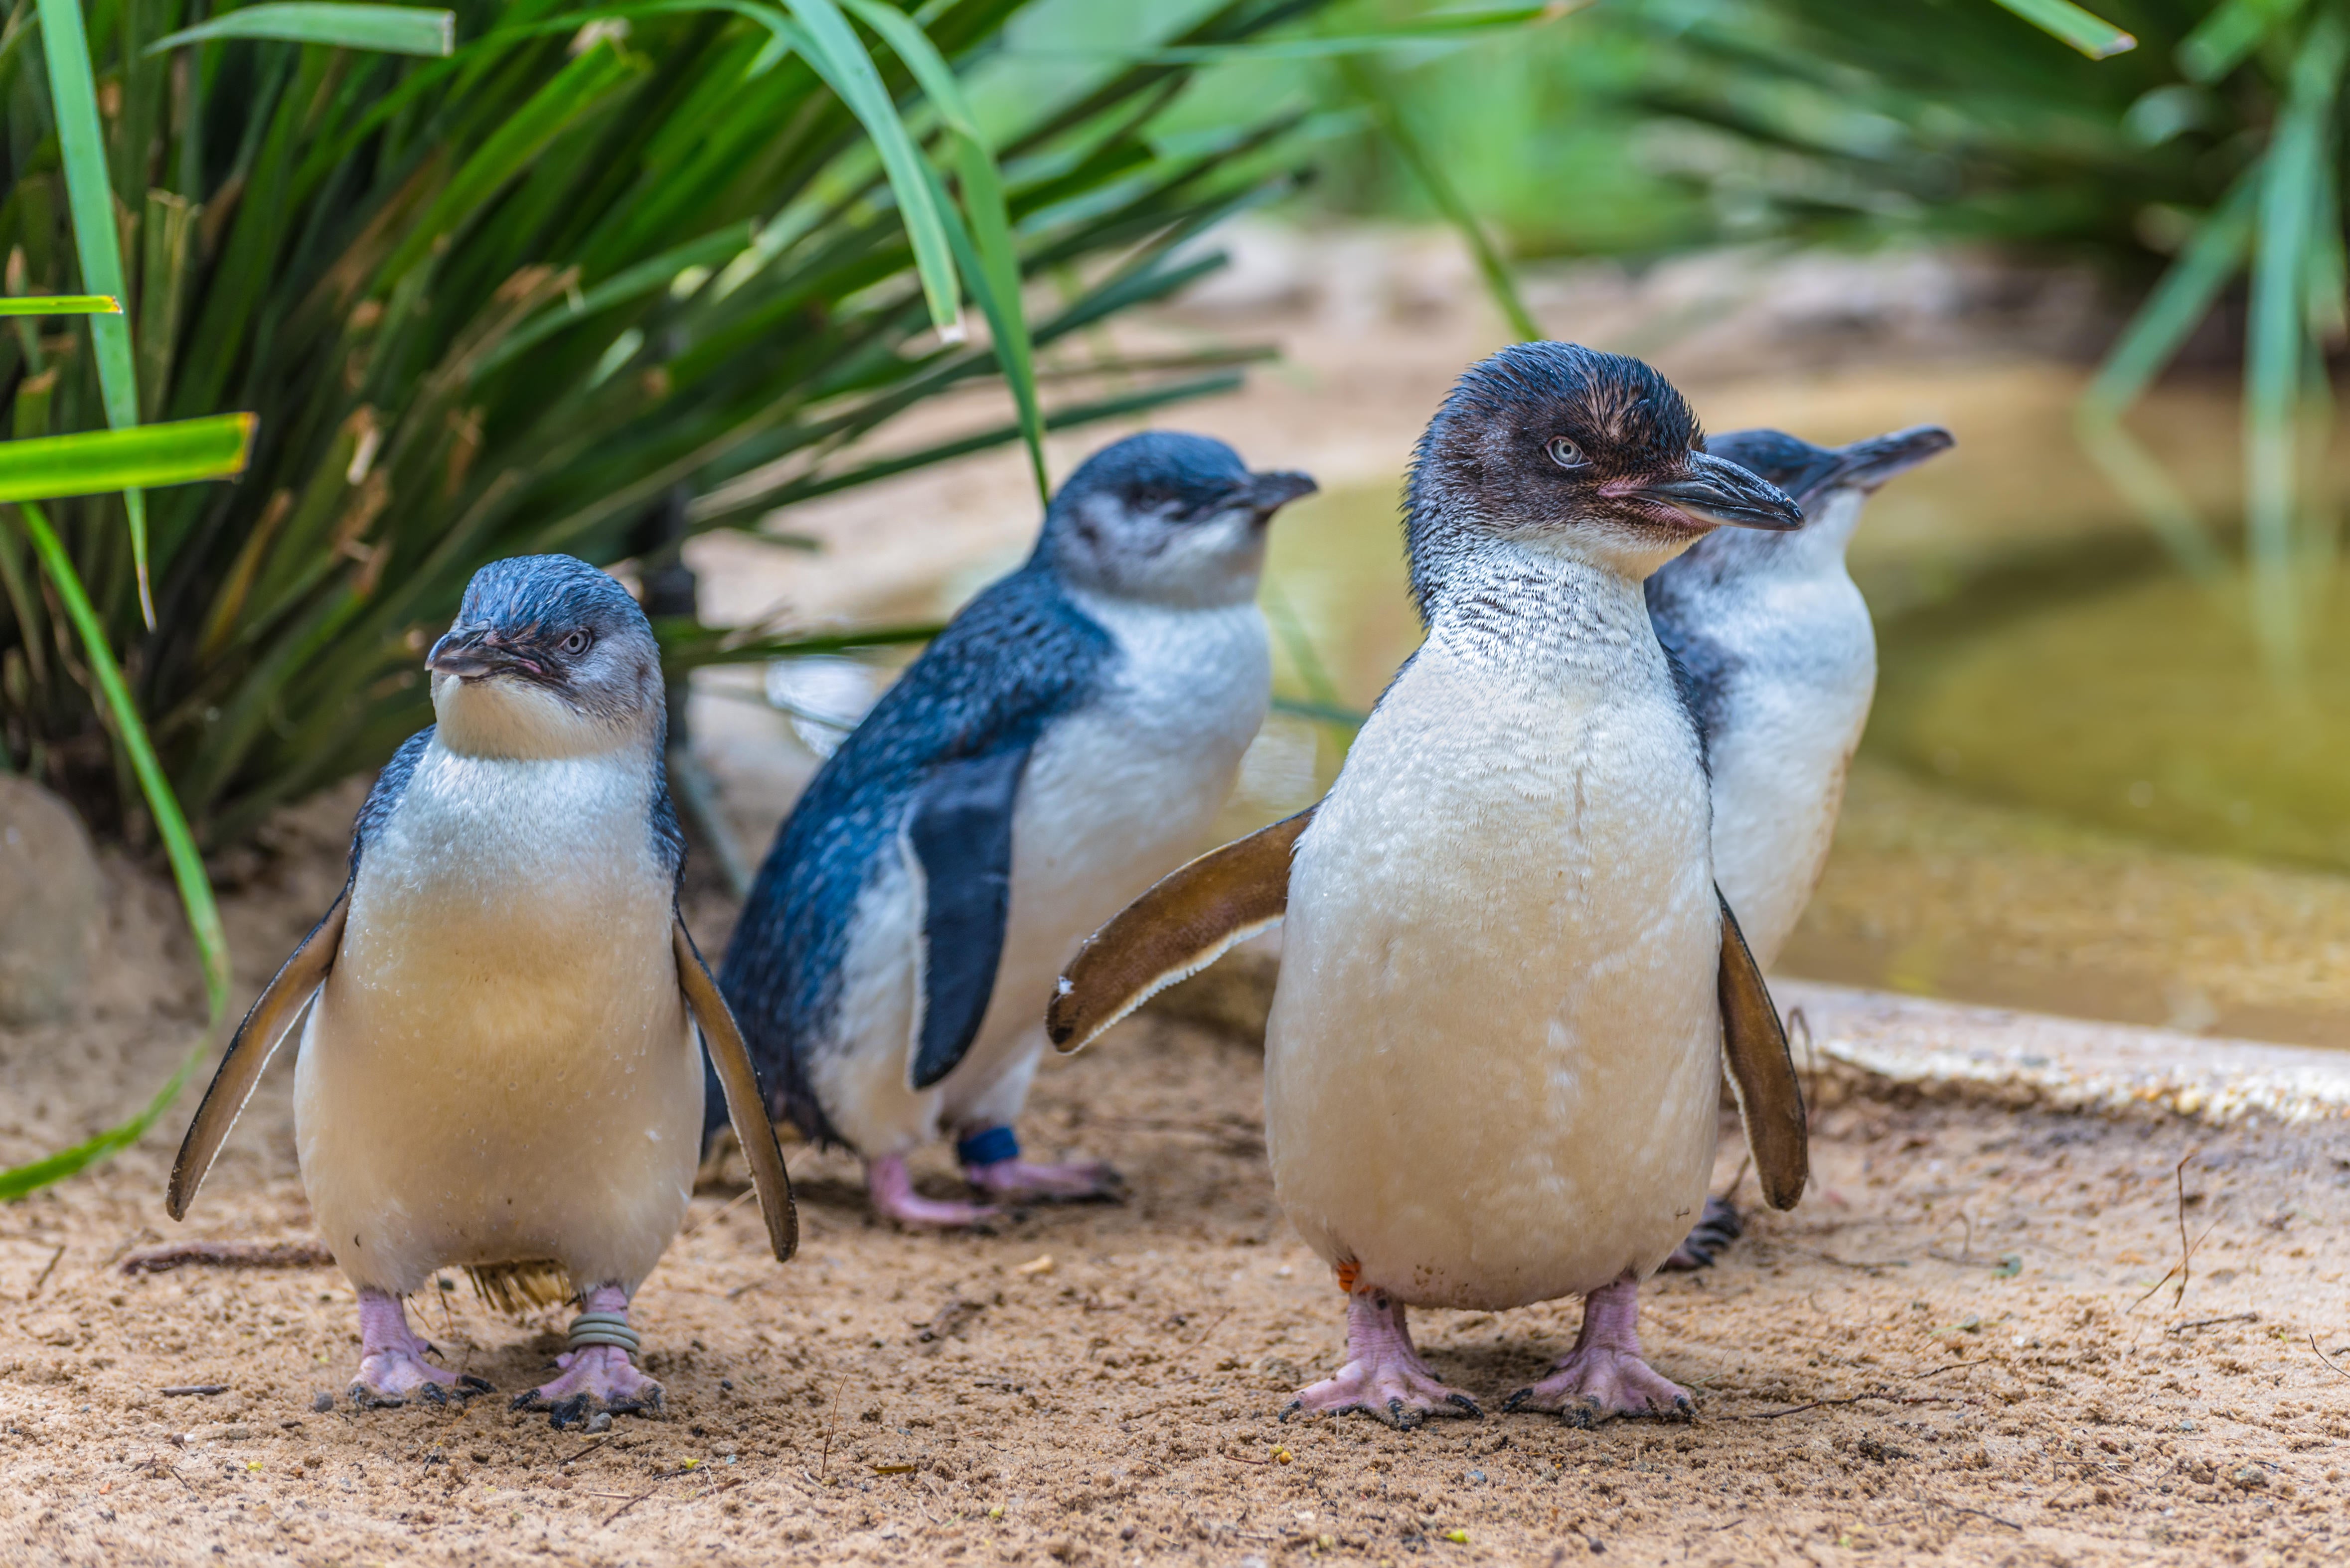 Little Penguin in wildlife park, Australia